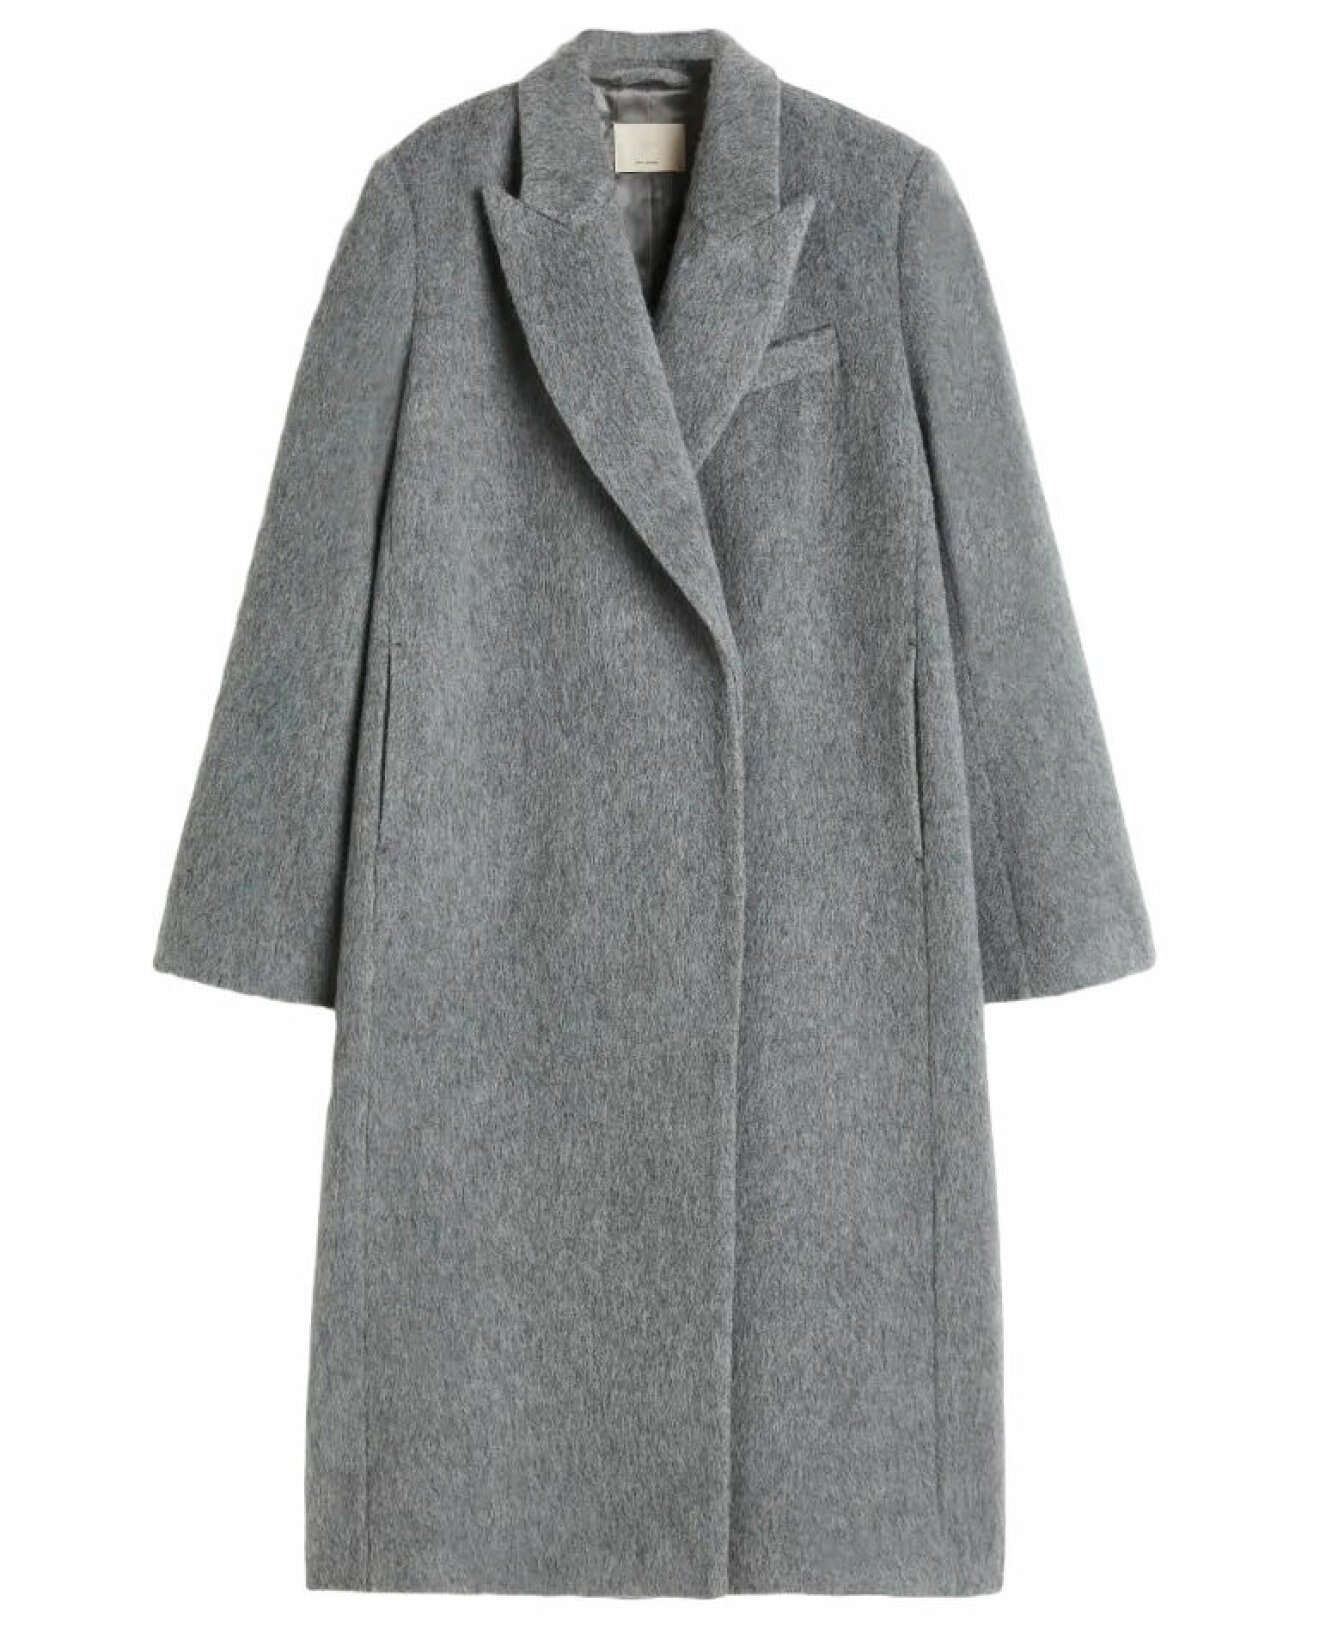 grå kappa i ull från hm